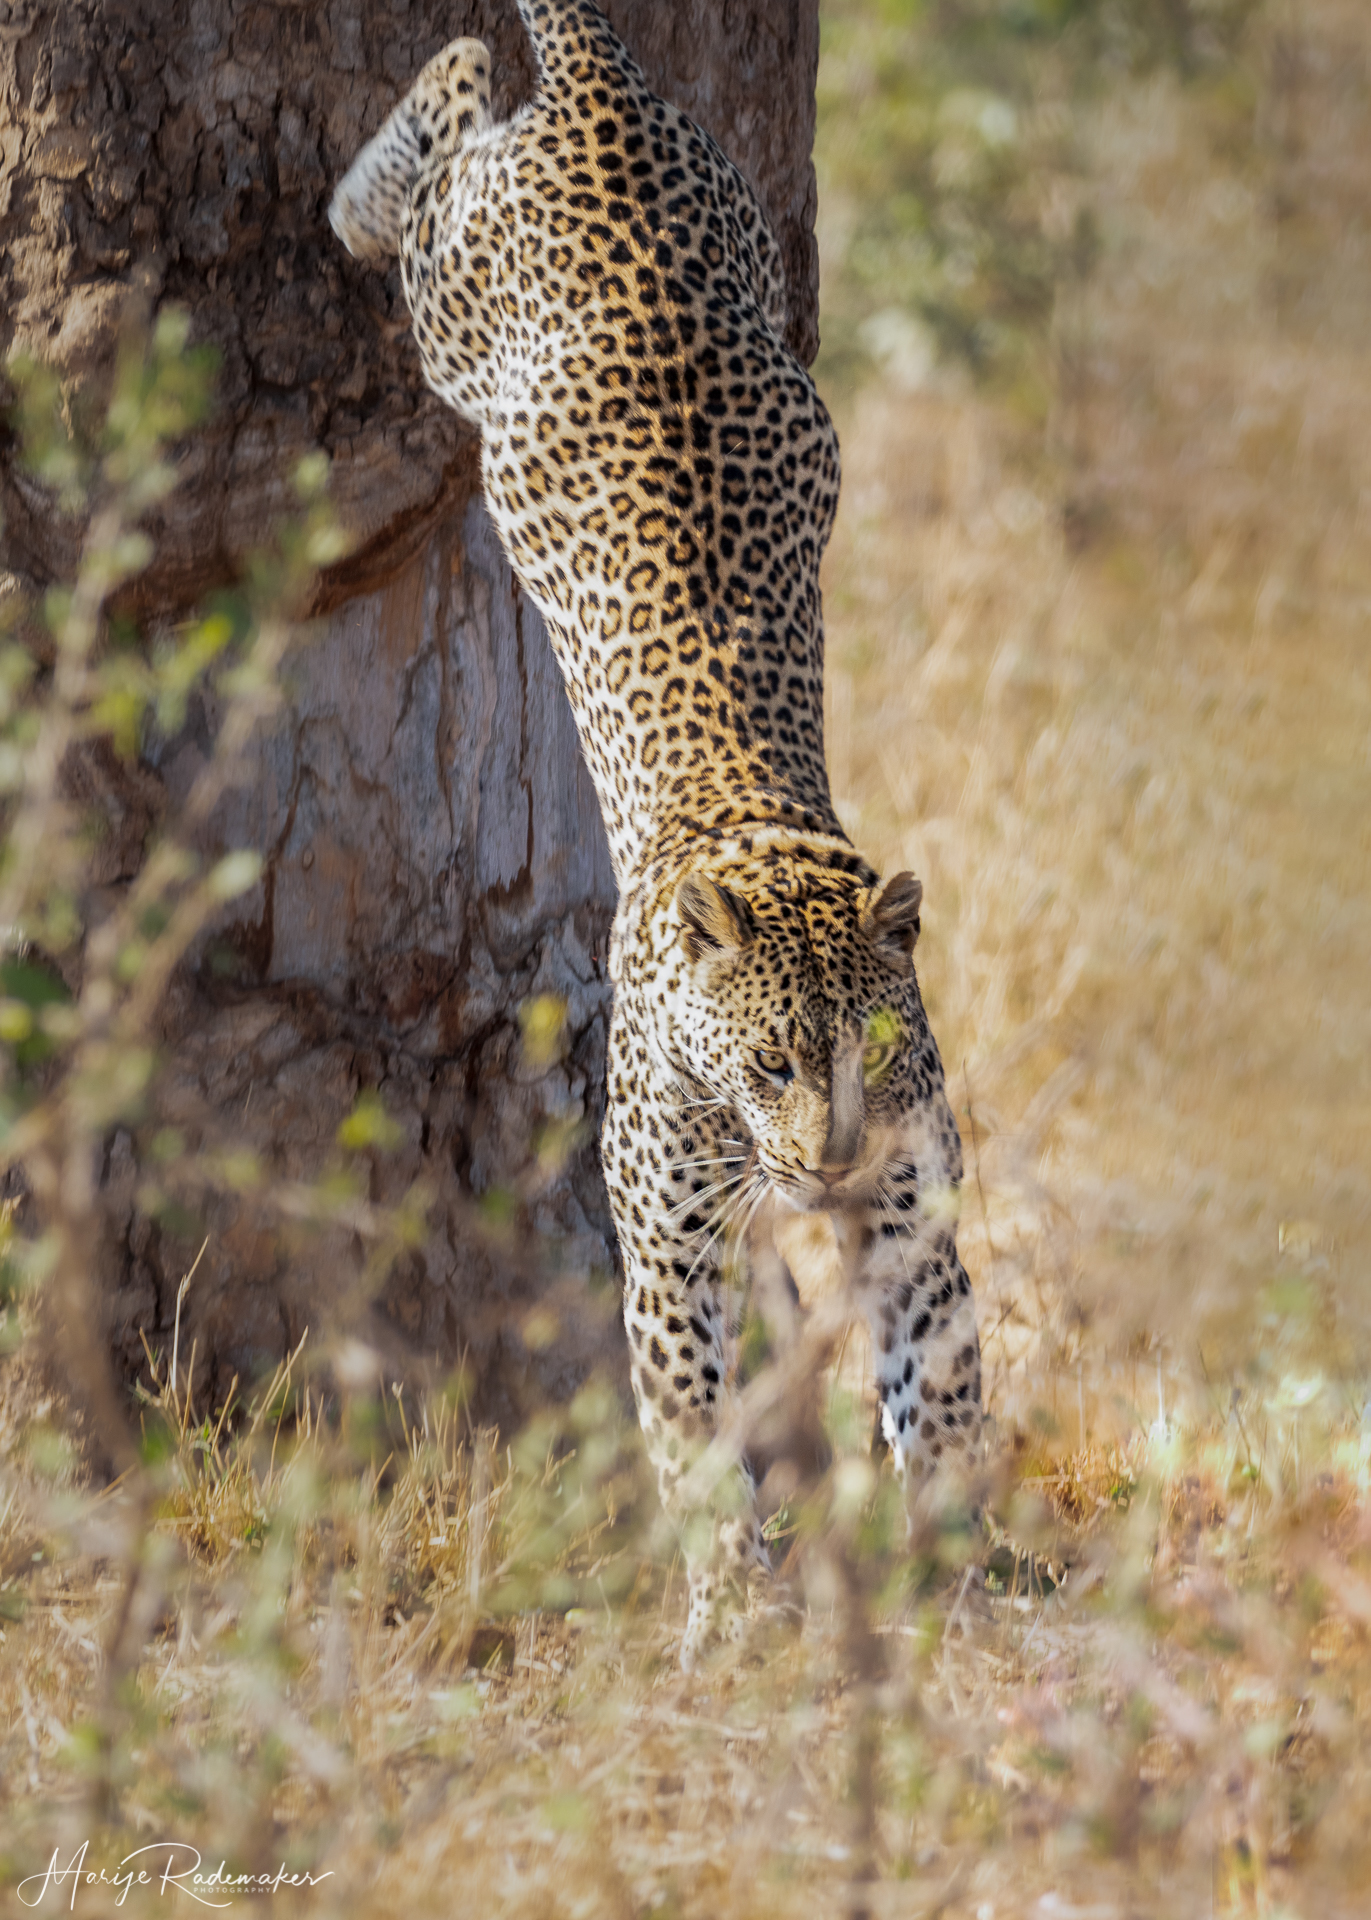 Captured at Kruger NP on 05 Oct, 2019 by Marije Rademaker